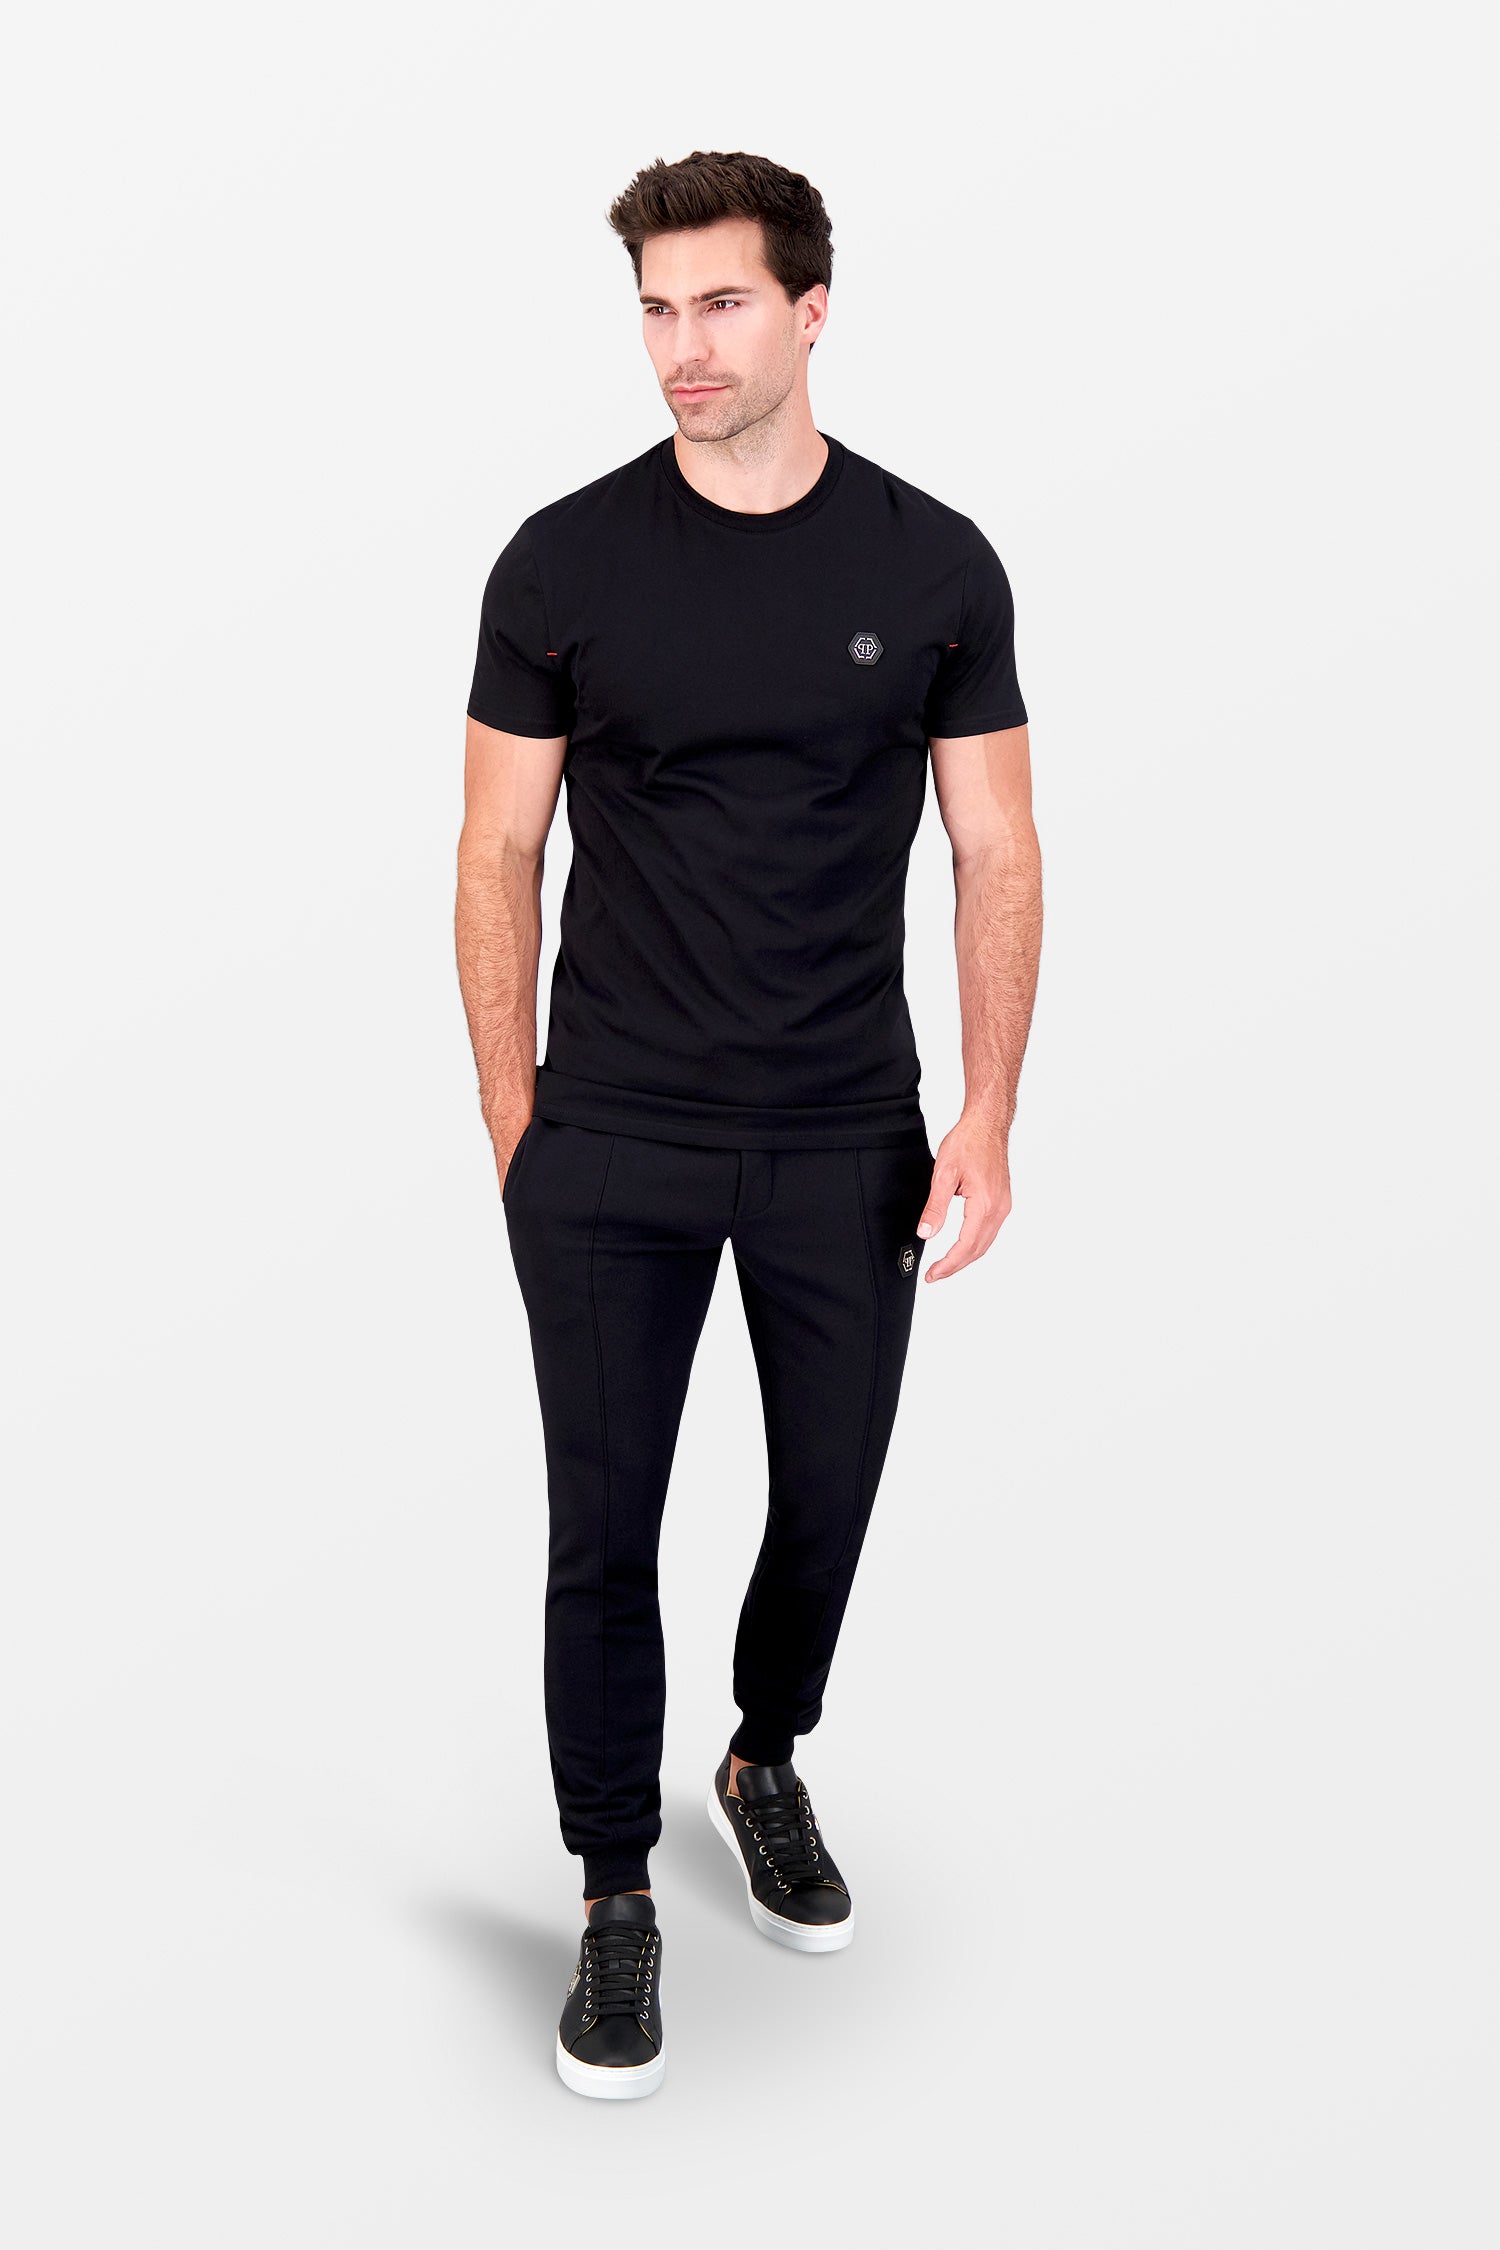 Philipp Plein Black Round Neck SS Istitutional T-Shirt